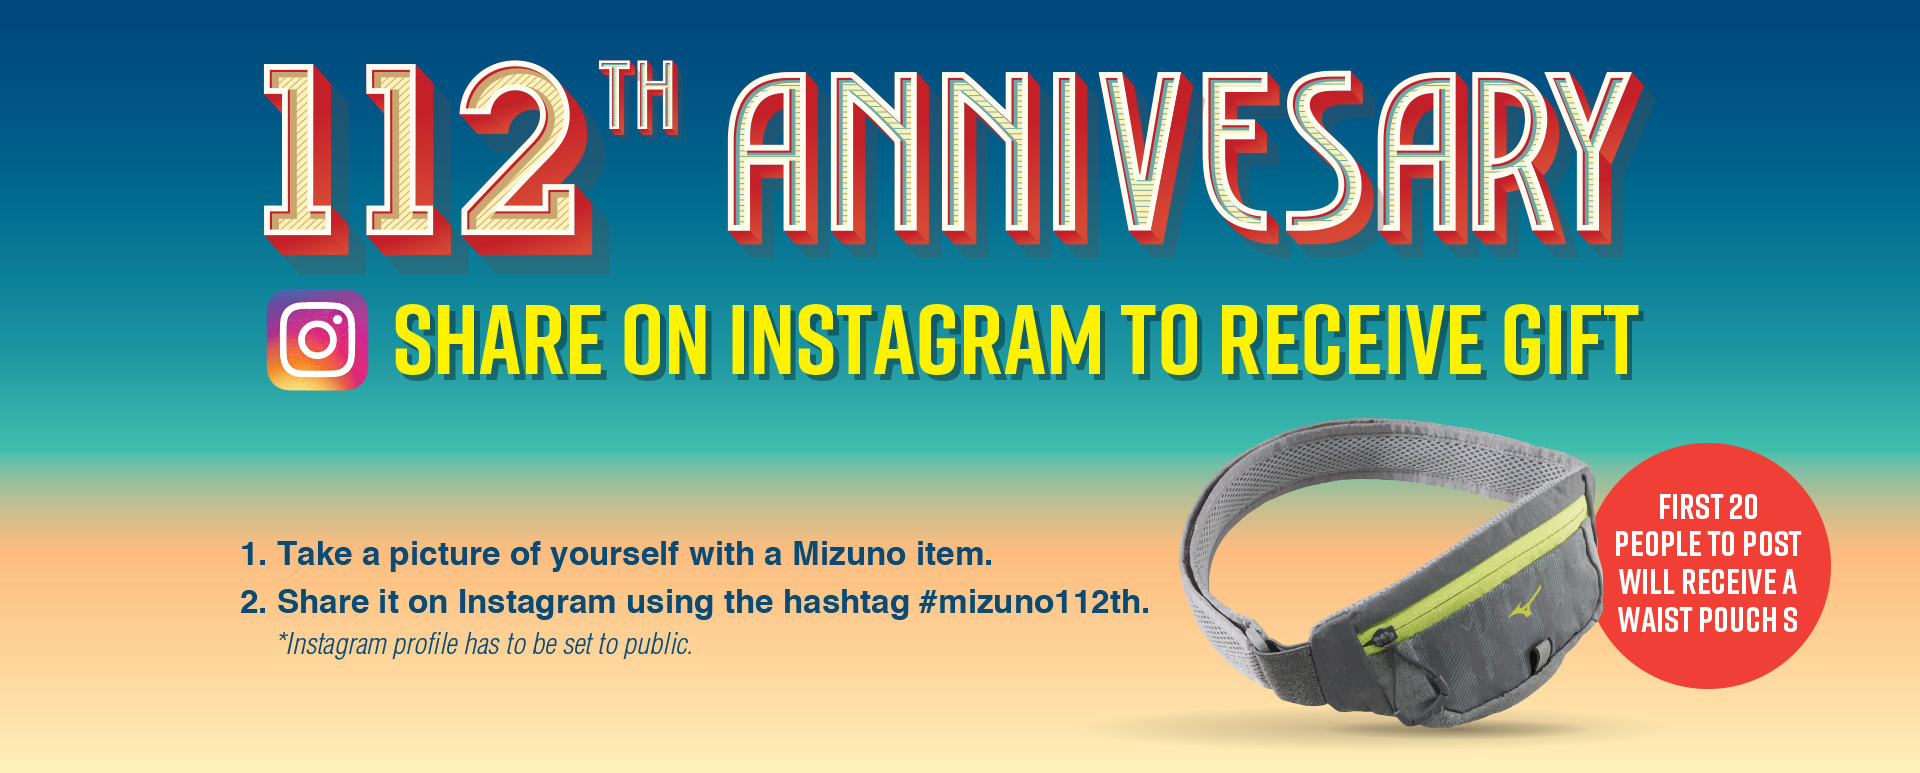 112th mizuno anniversary campaign